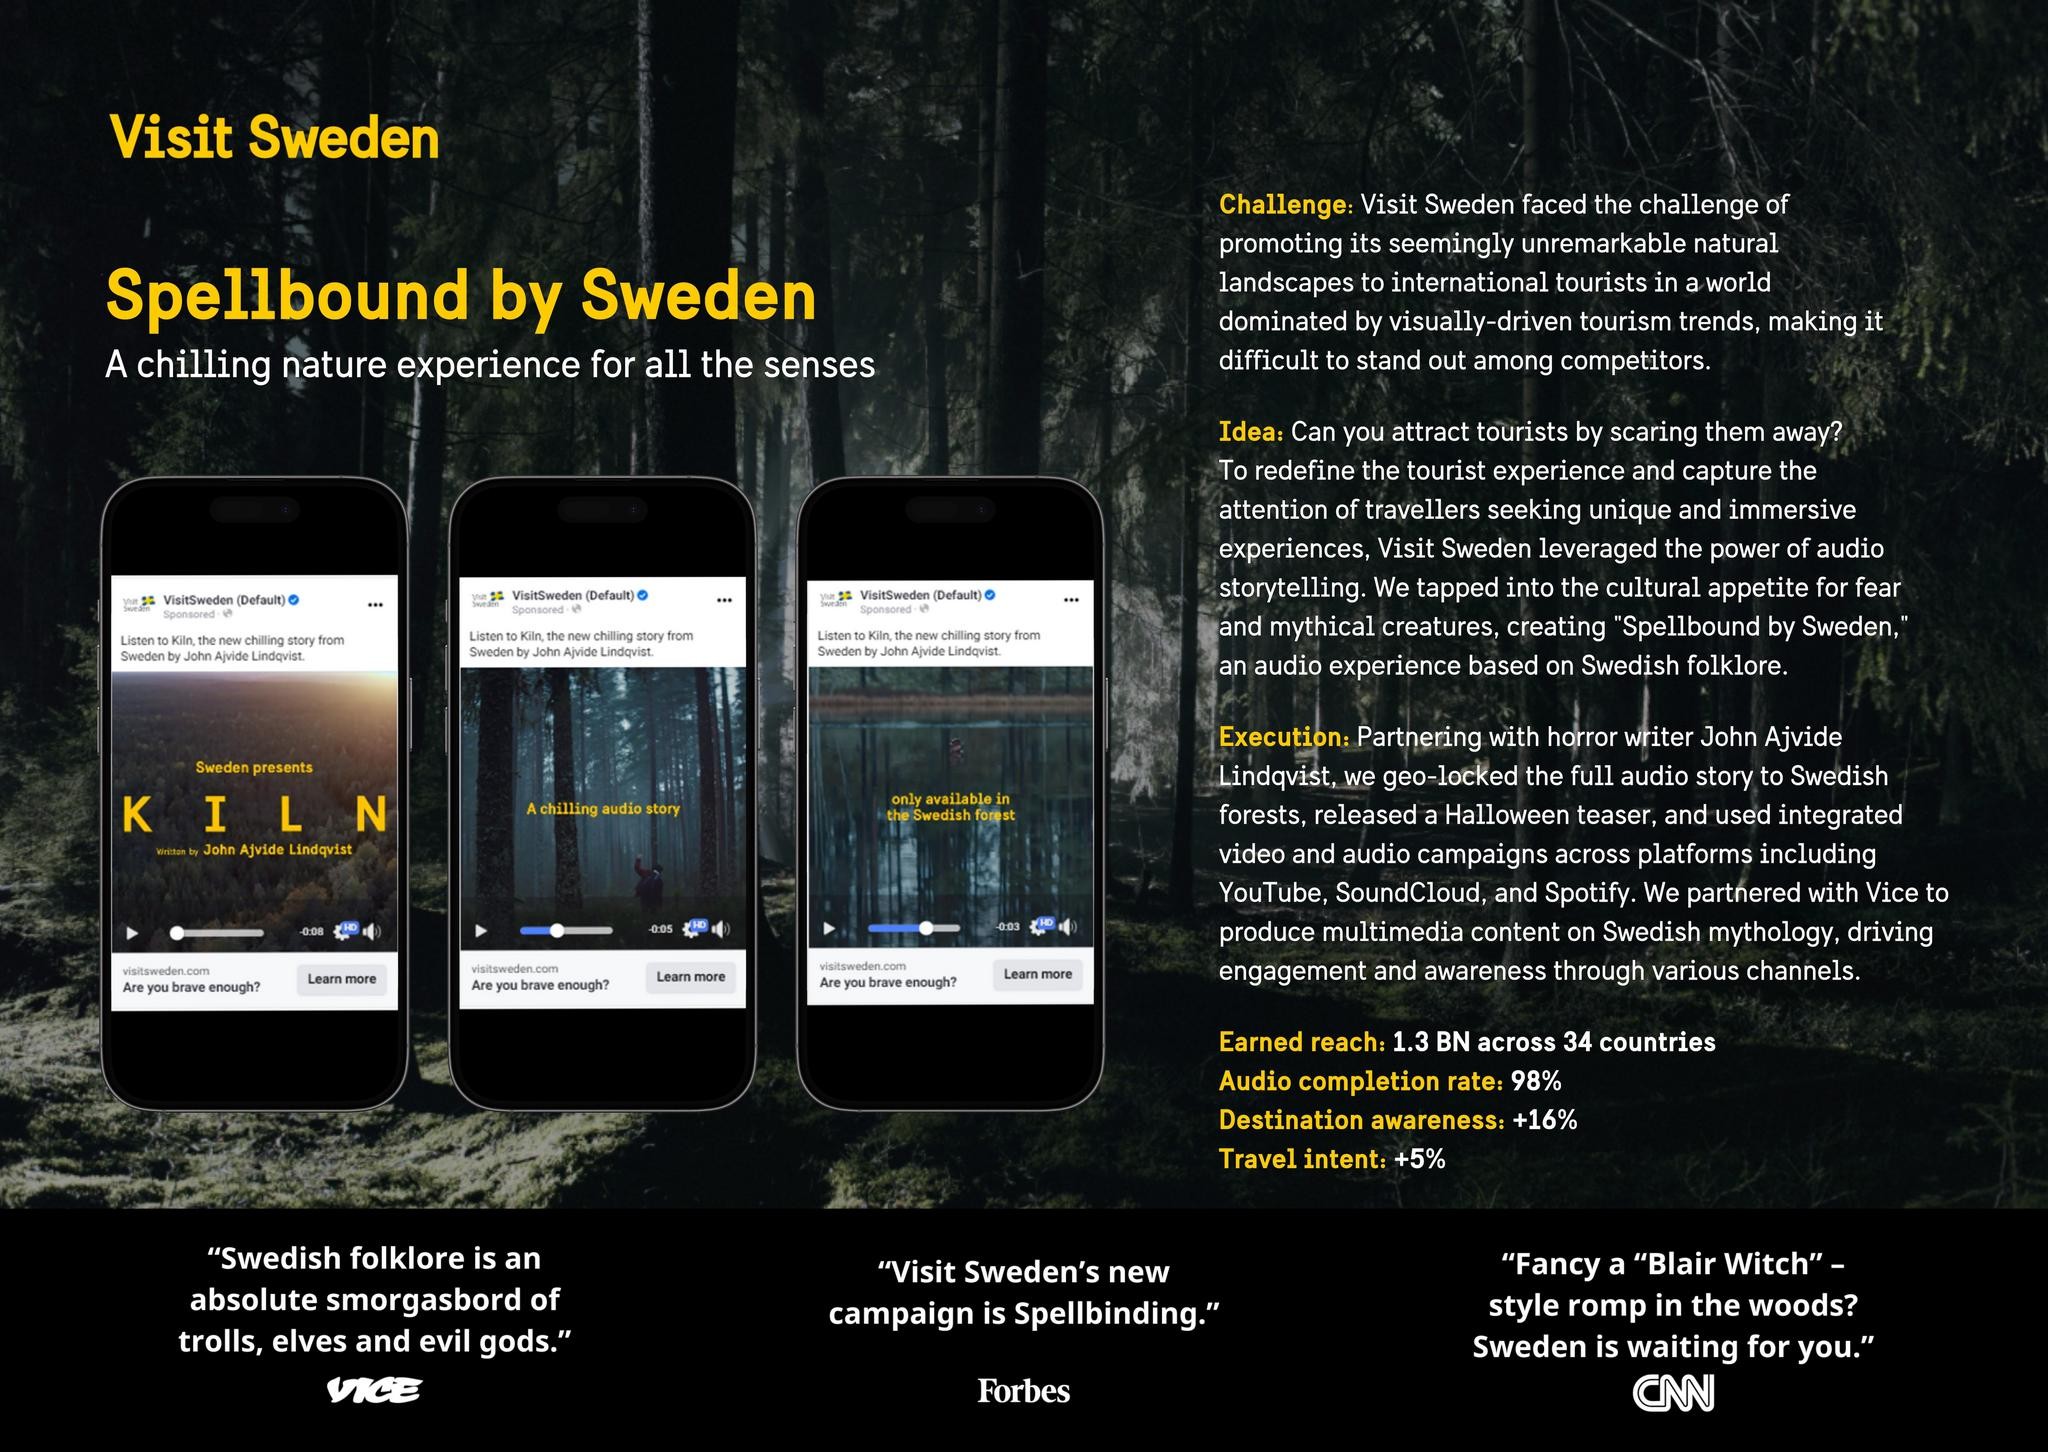 Spellbound by Sweden